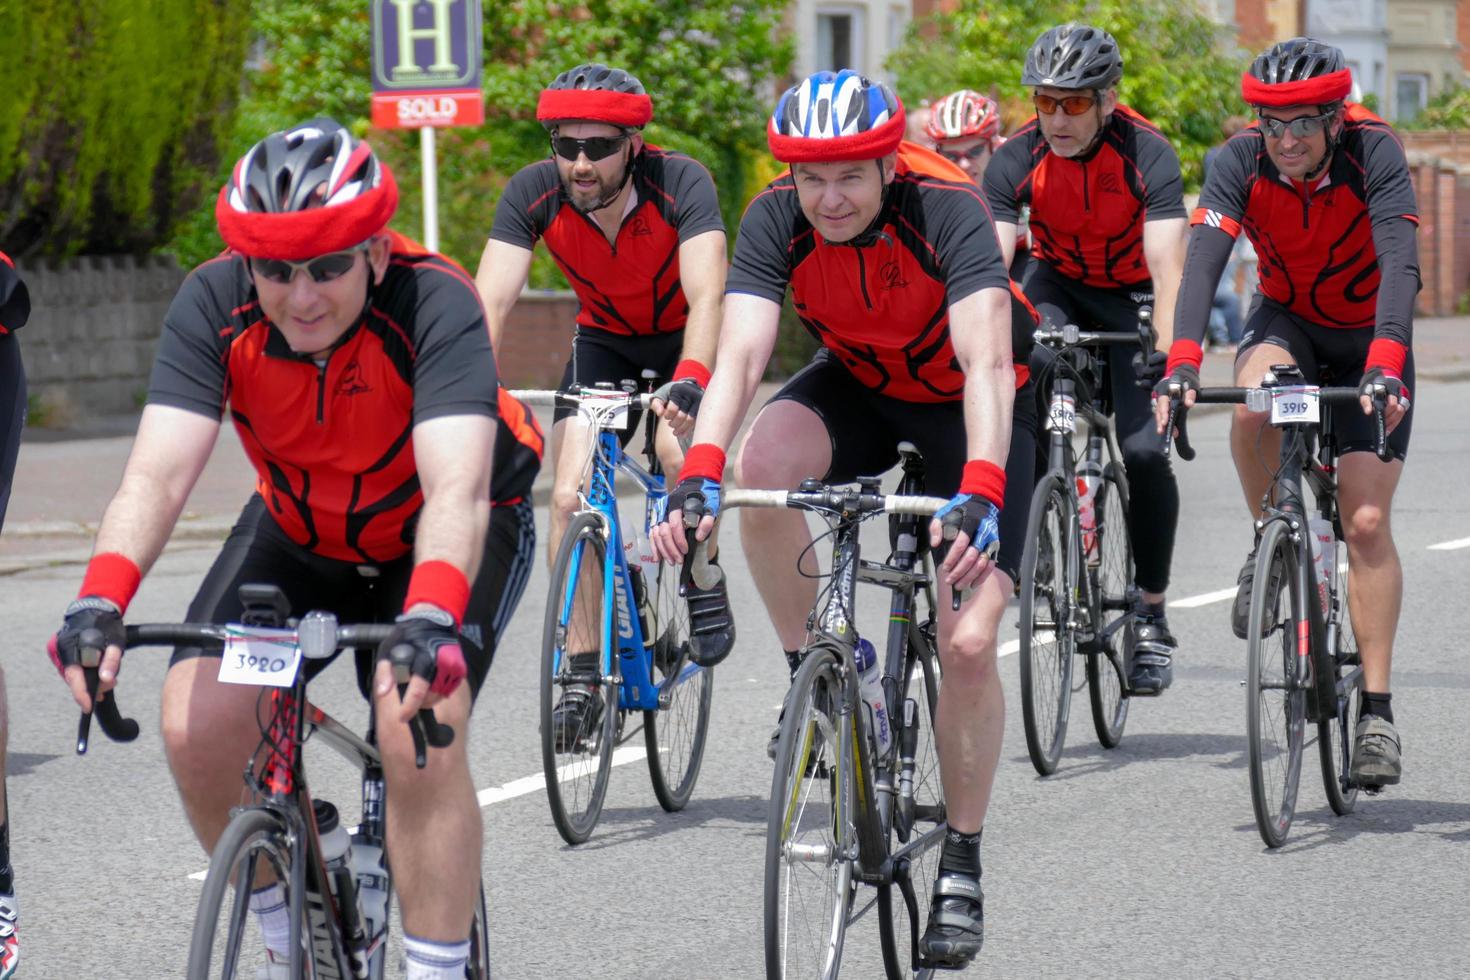 cardiff, wales, uk, 2015. radfahrer, die an der velothon-radsportveranstaltung teilnehmen foto